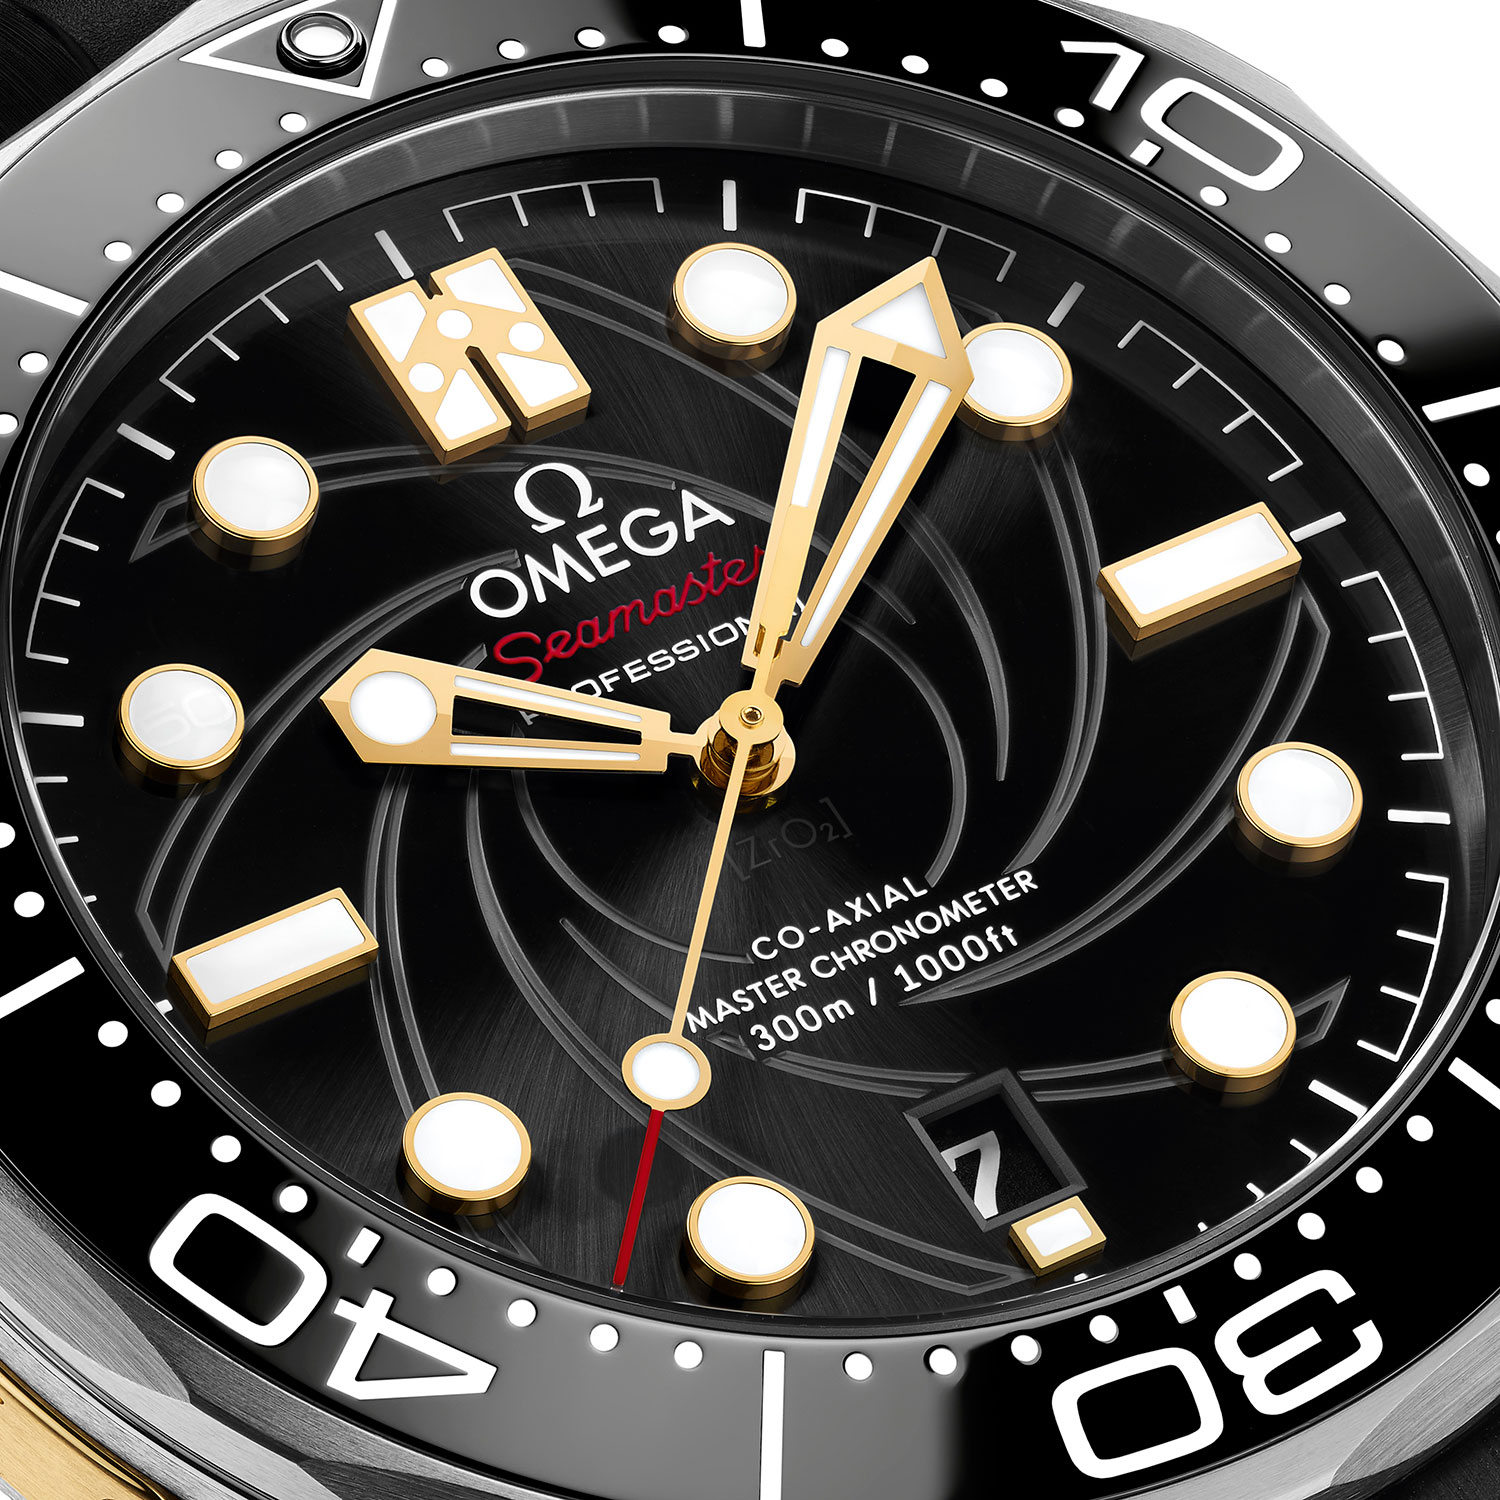 Esfera del Omega Seamaster Diver 300M “On Her Majesty’s Secret Service” 50th Anniversary